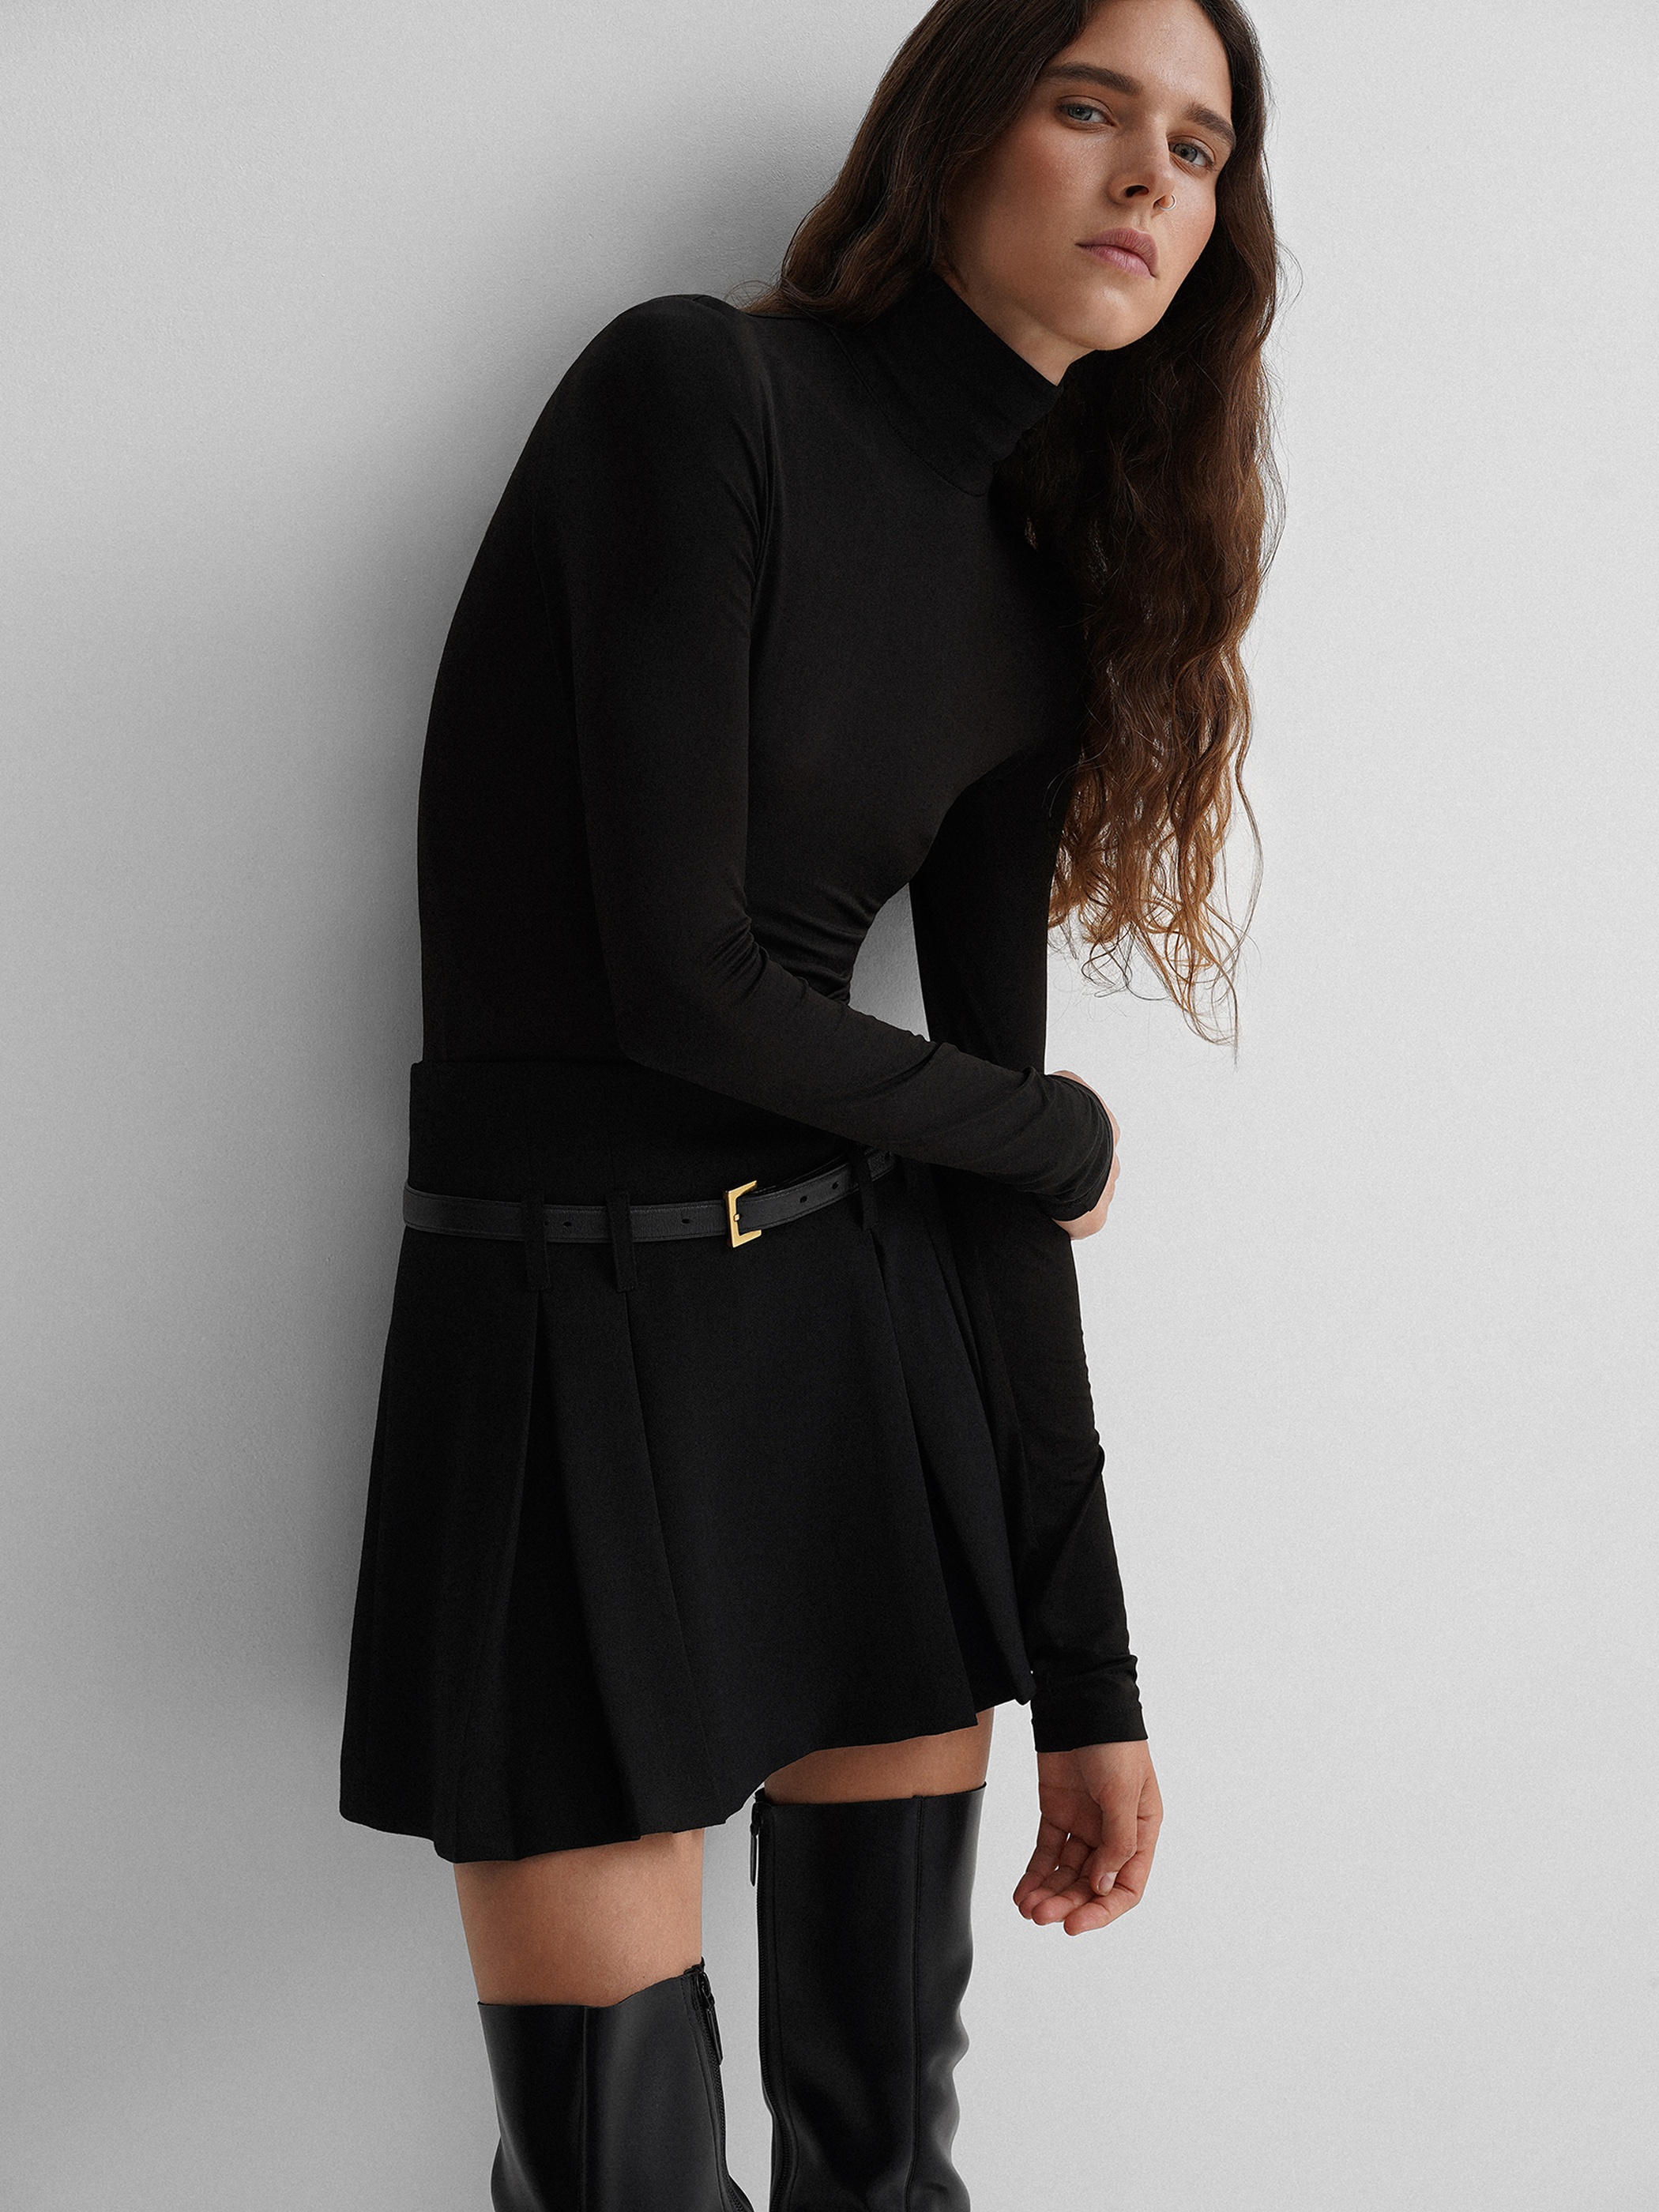 Pleats mini skirt - Namelazz Official Online Store